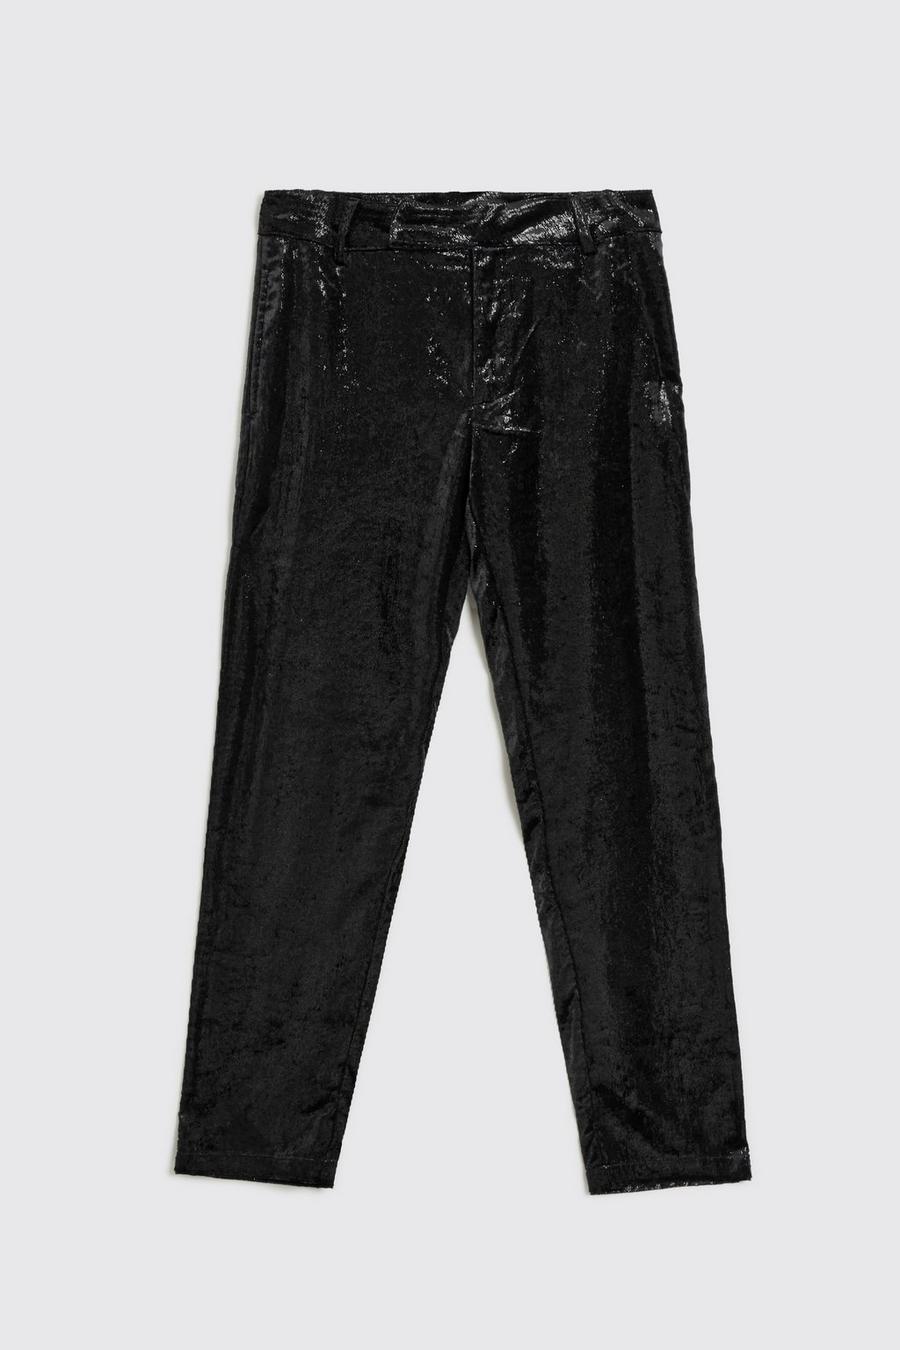 Black noir Metallic Shimmer Slim Trousers